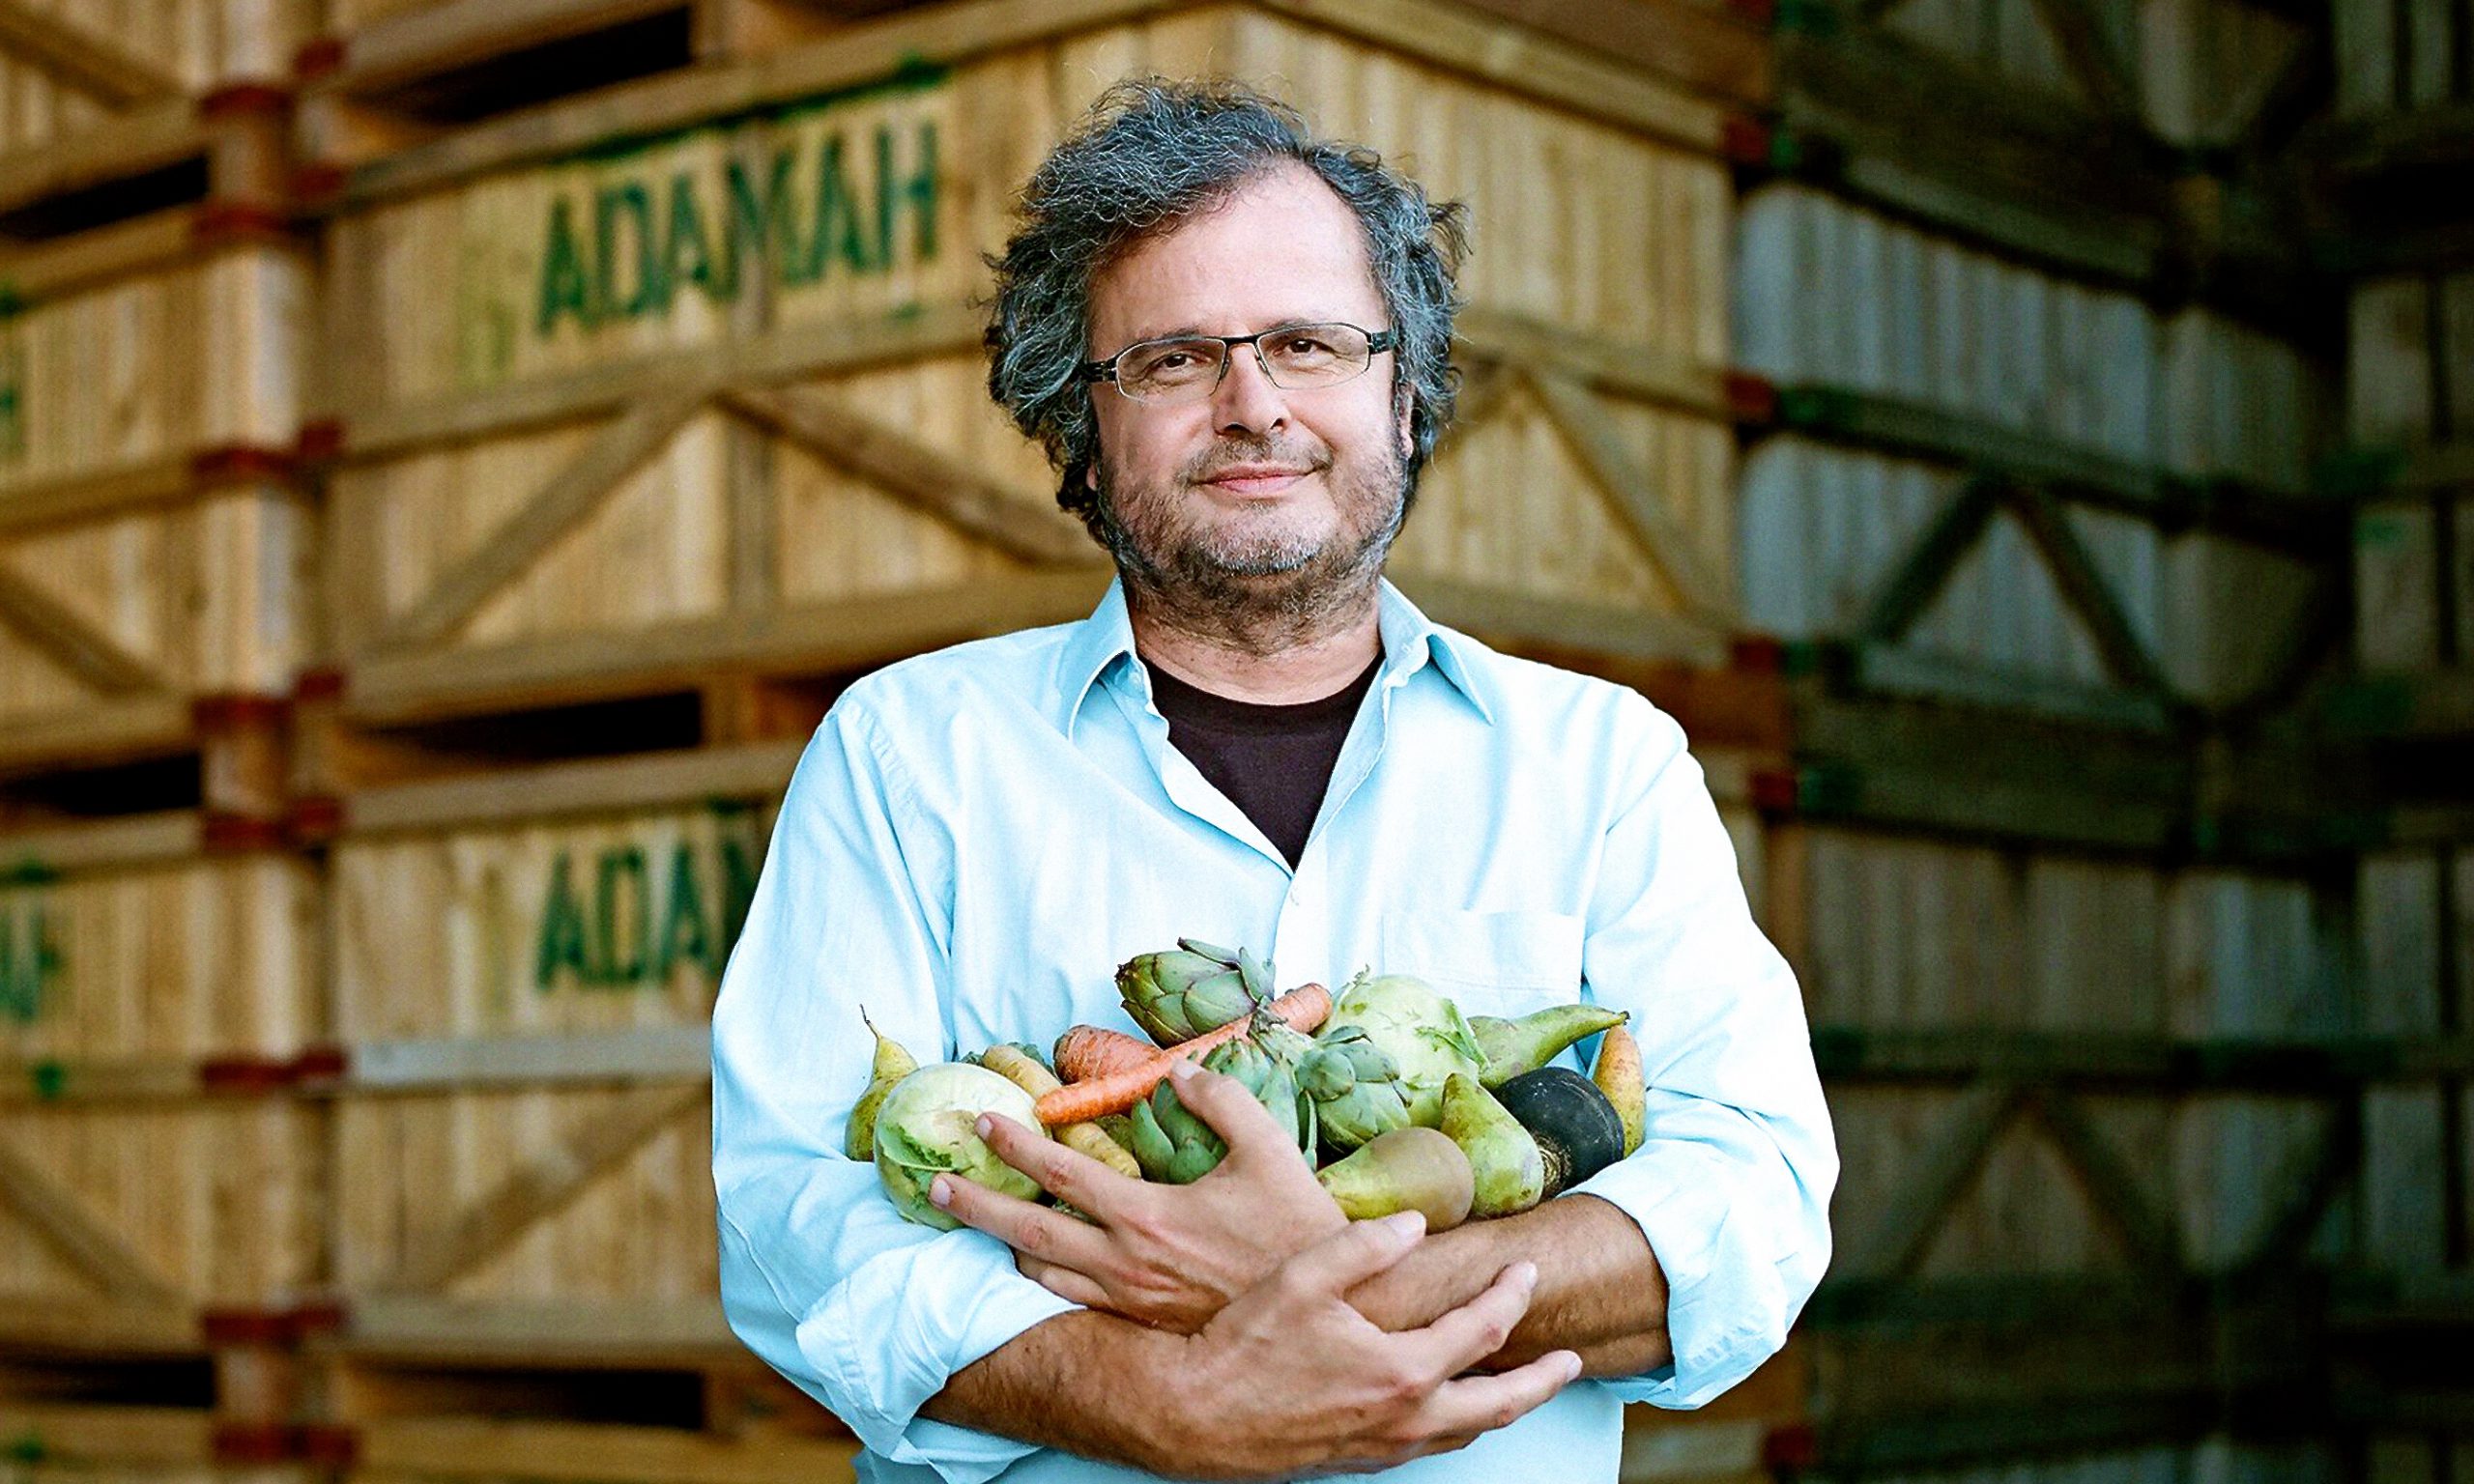 Mann hält Gemüse im Arm